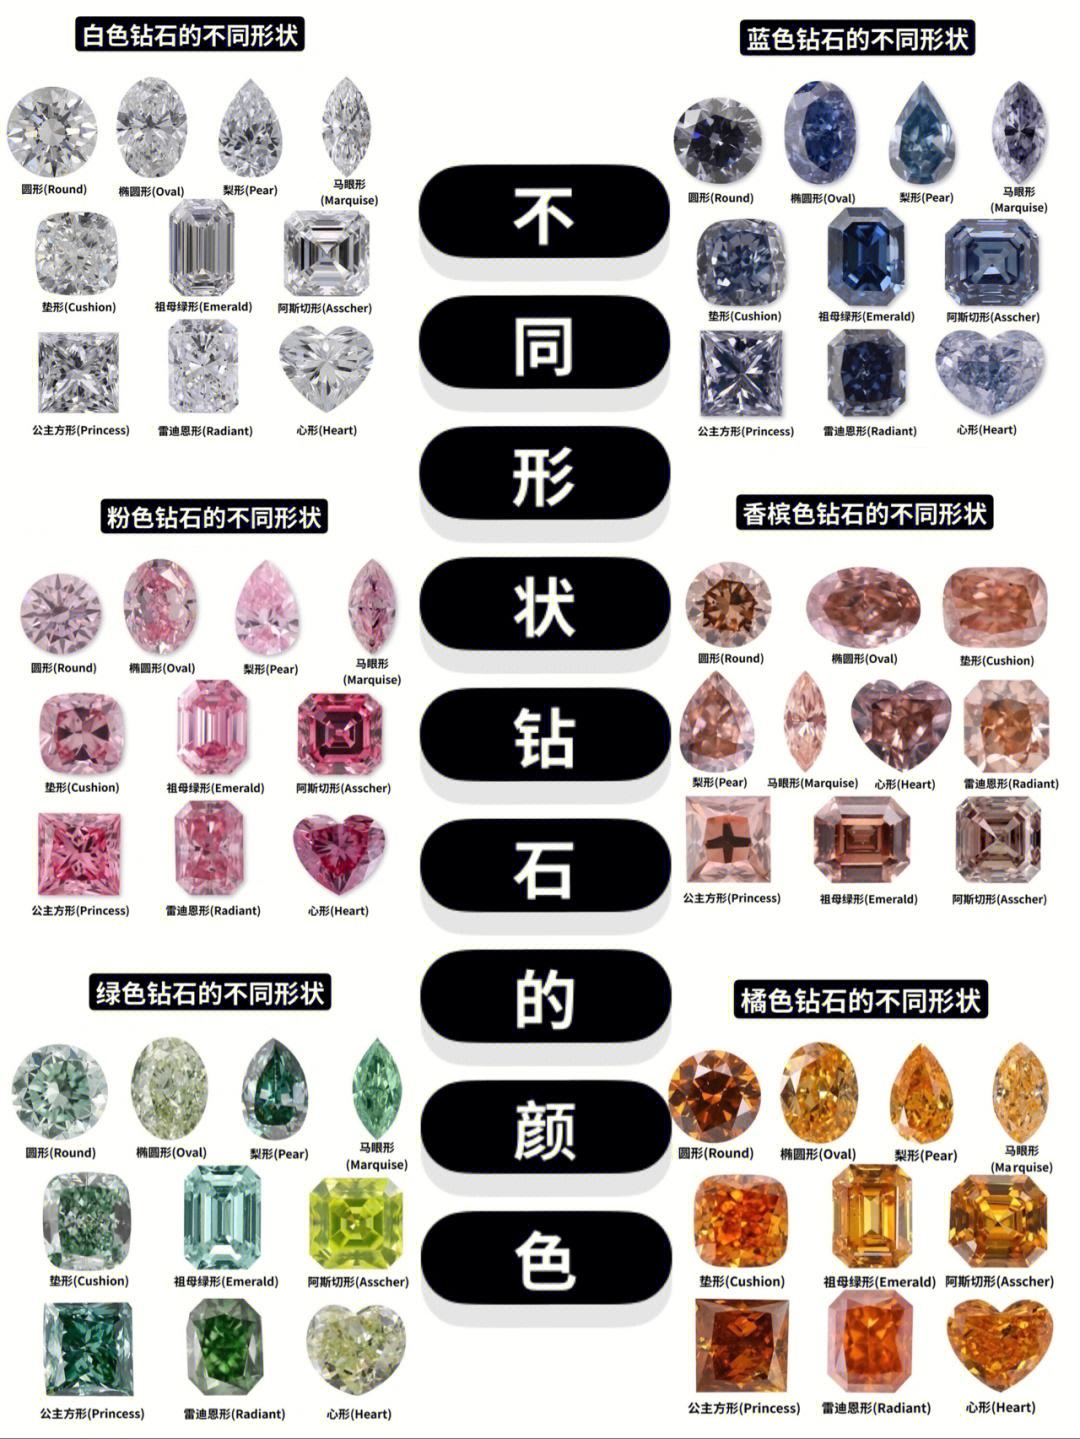 钻石一般买什么颜色等级,钻石一般买什么颜色等级图-第2张图片-翡翠网